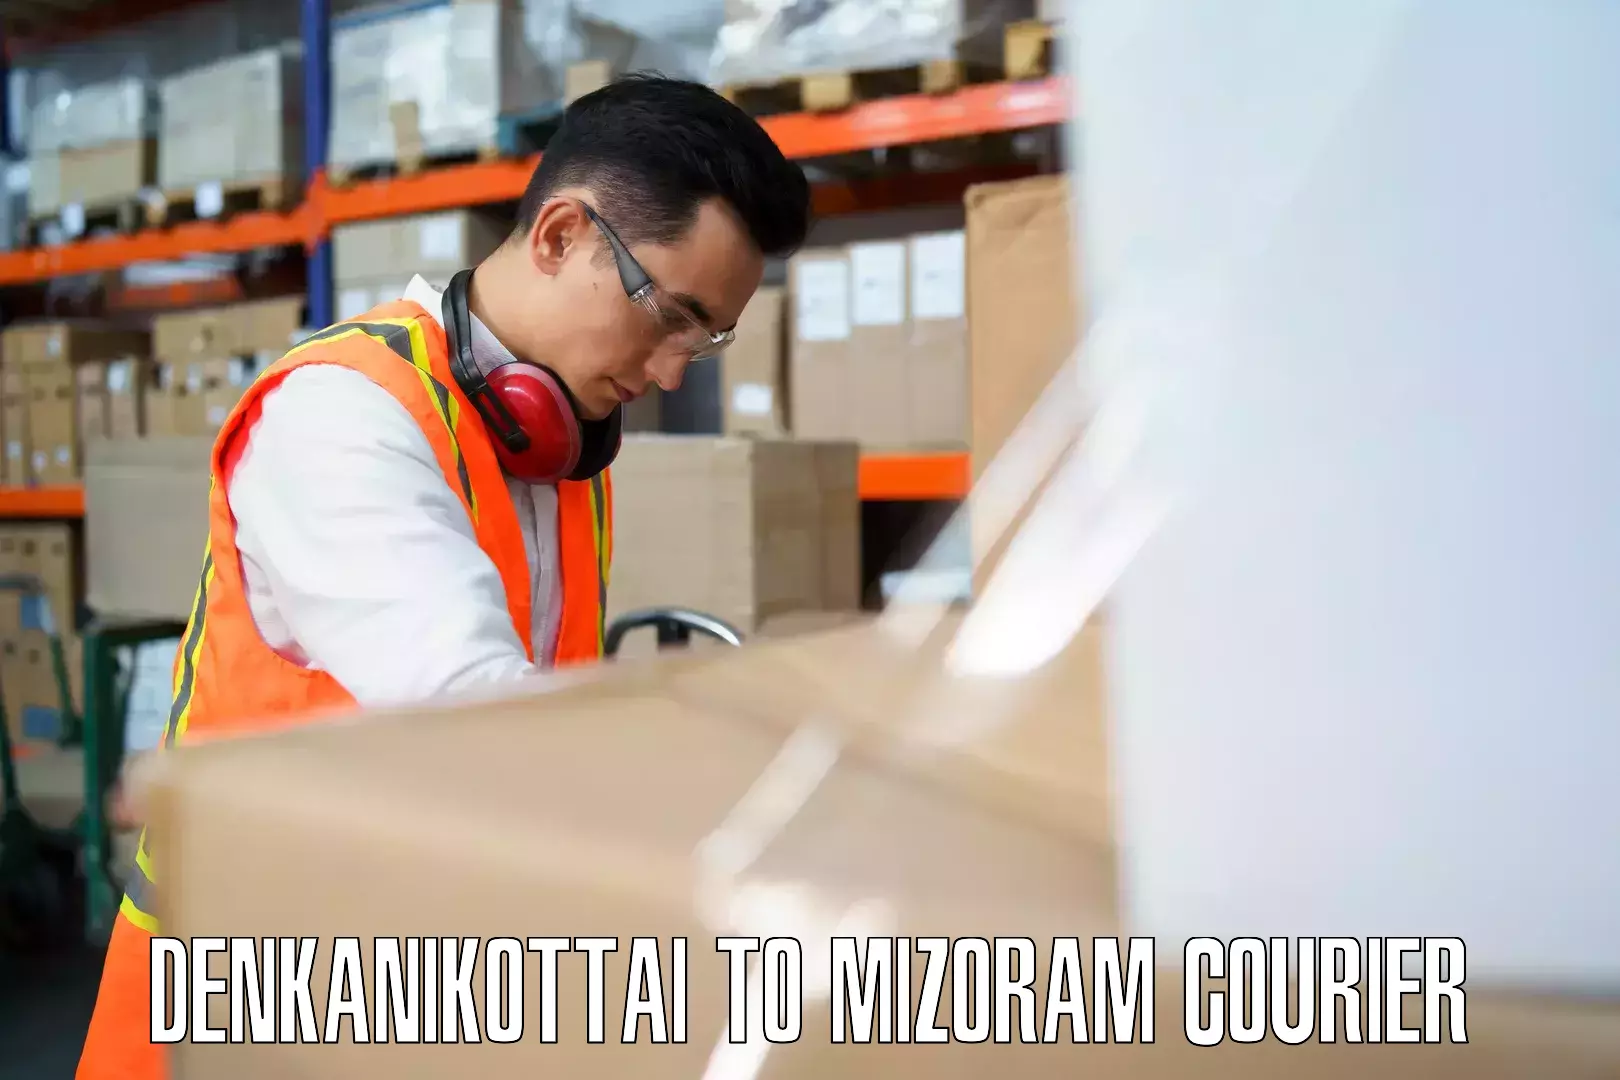 Luggage shipping strategy Denkanikottai to Mizoram